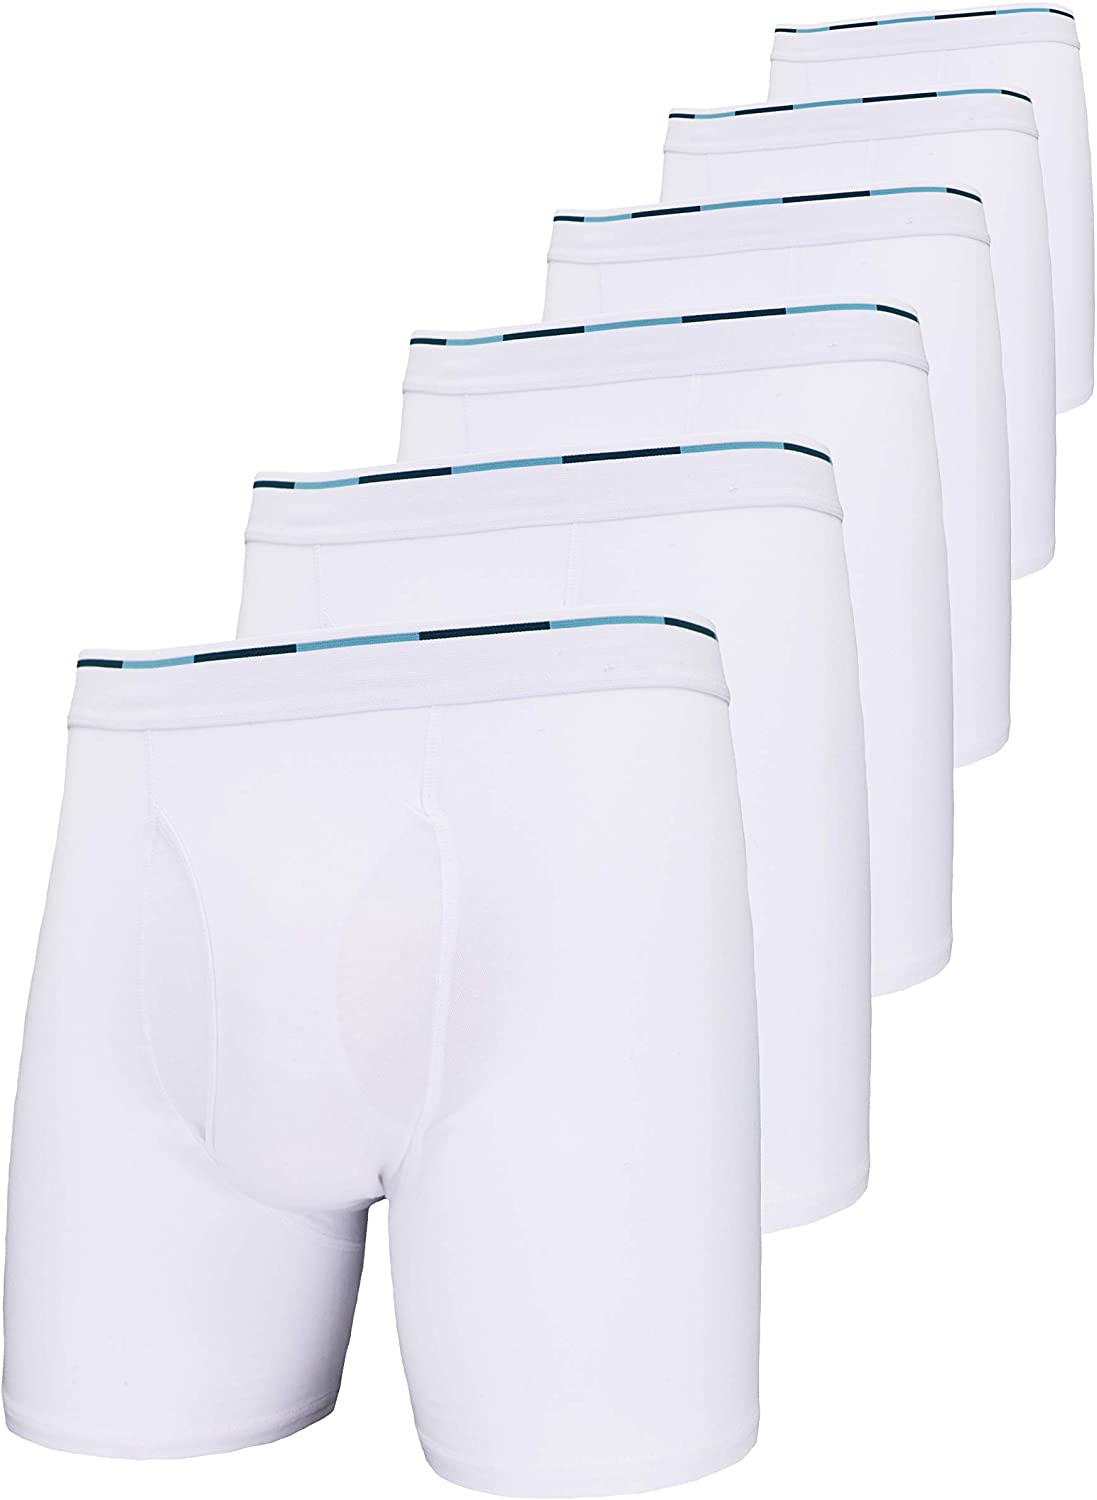 Comfneat Mens Boxer Briefs 6-Pack S-XXL Tagless Underwear Soft Cotton Spandex